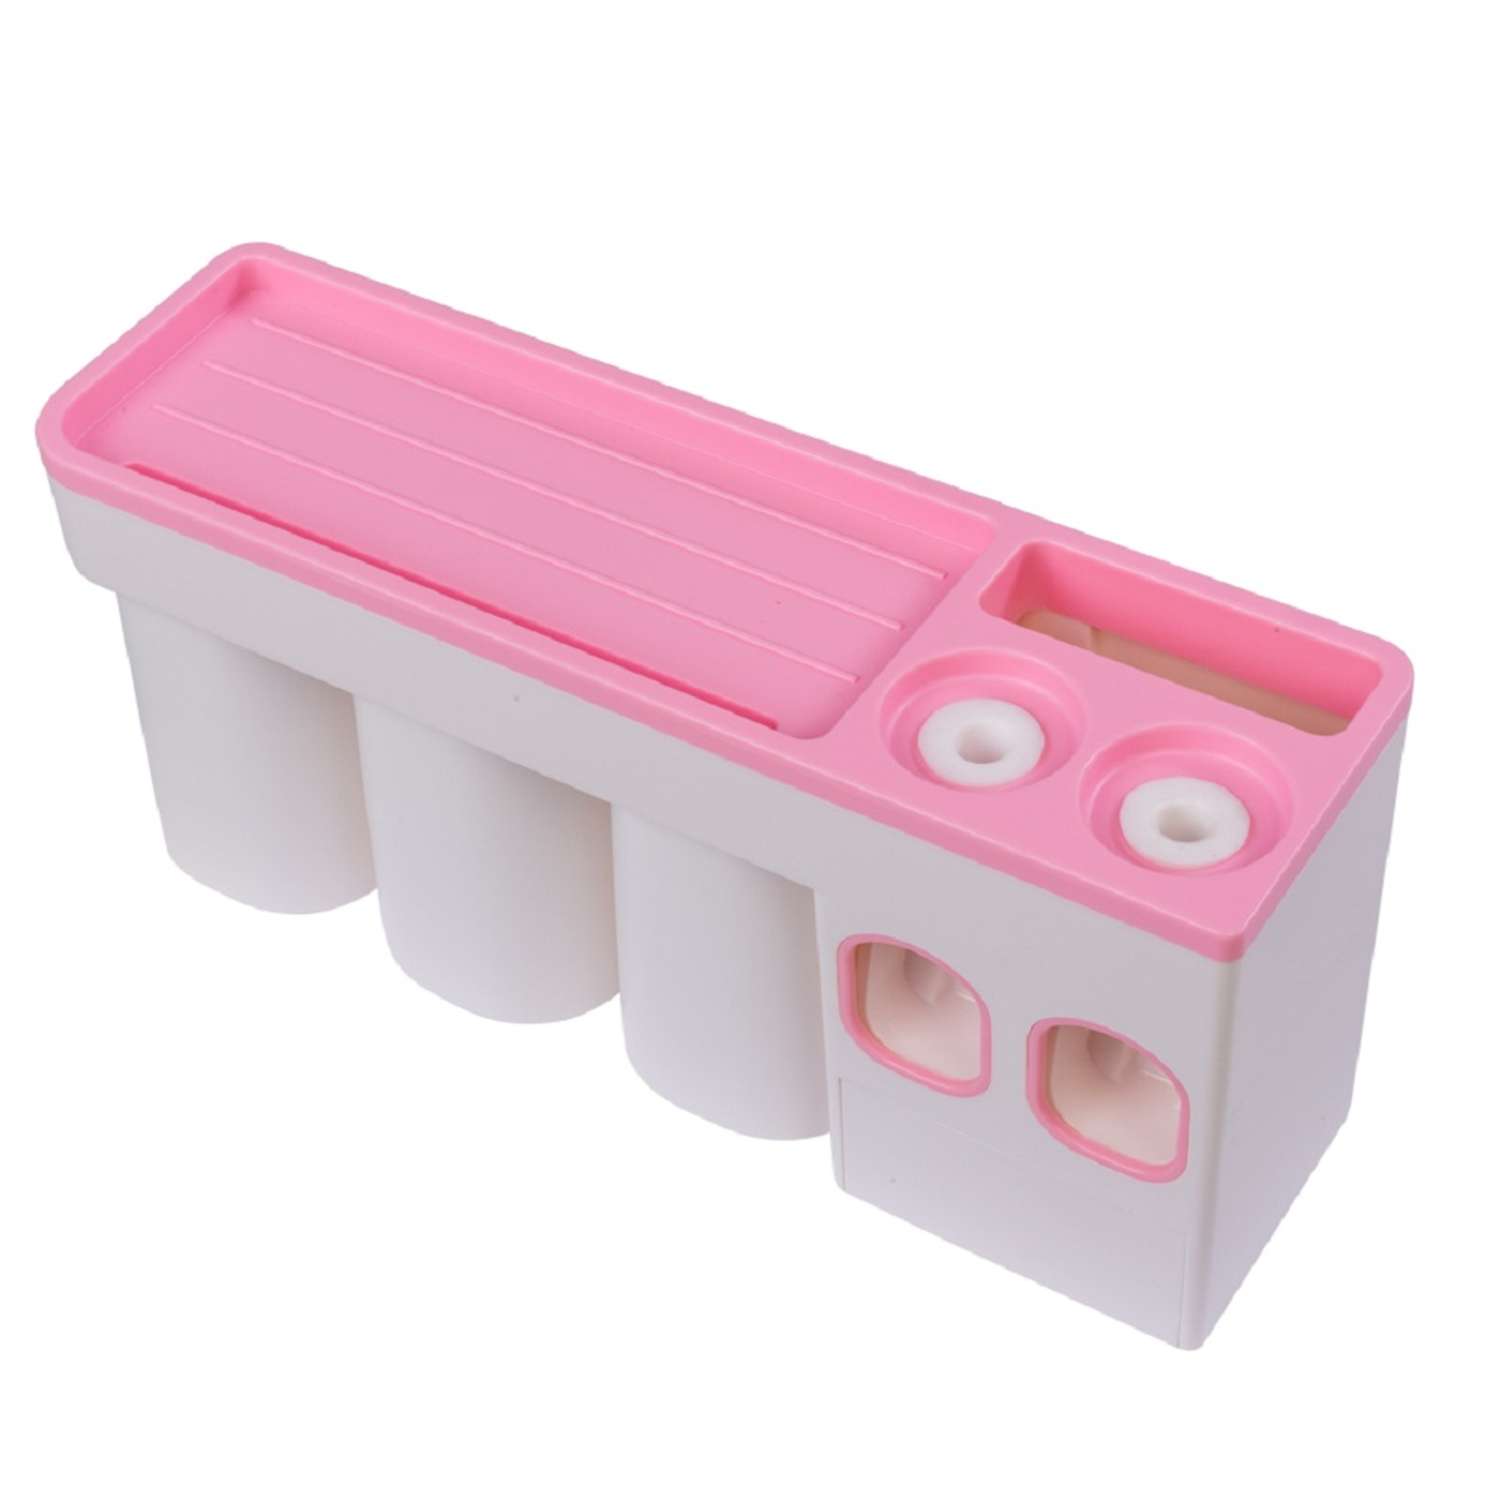 Диспенсер OLSA-Aijiawang для зубных щеток 3 в 1 настенный с дозатором для пасты 3 стакана розовый - фото 1